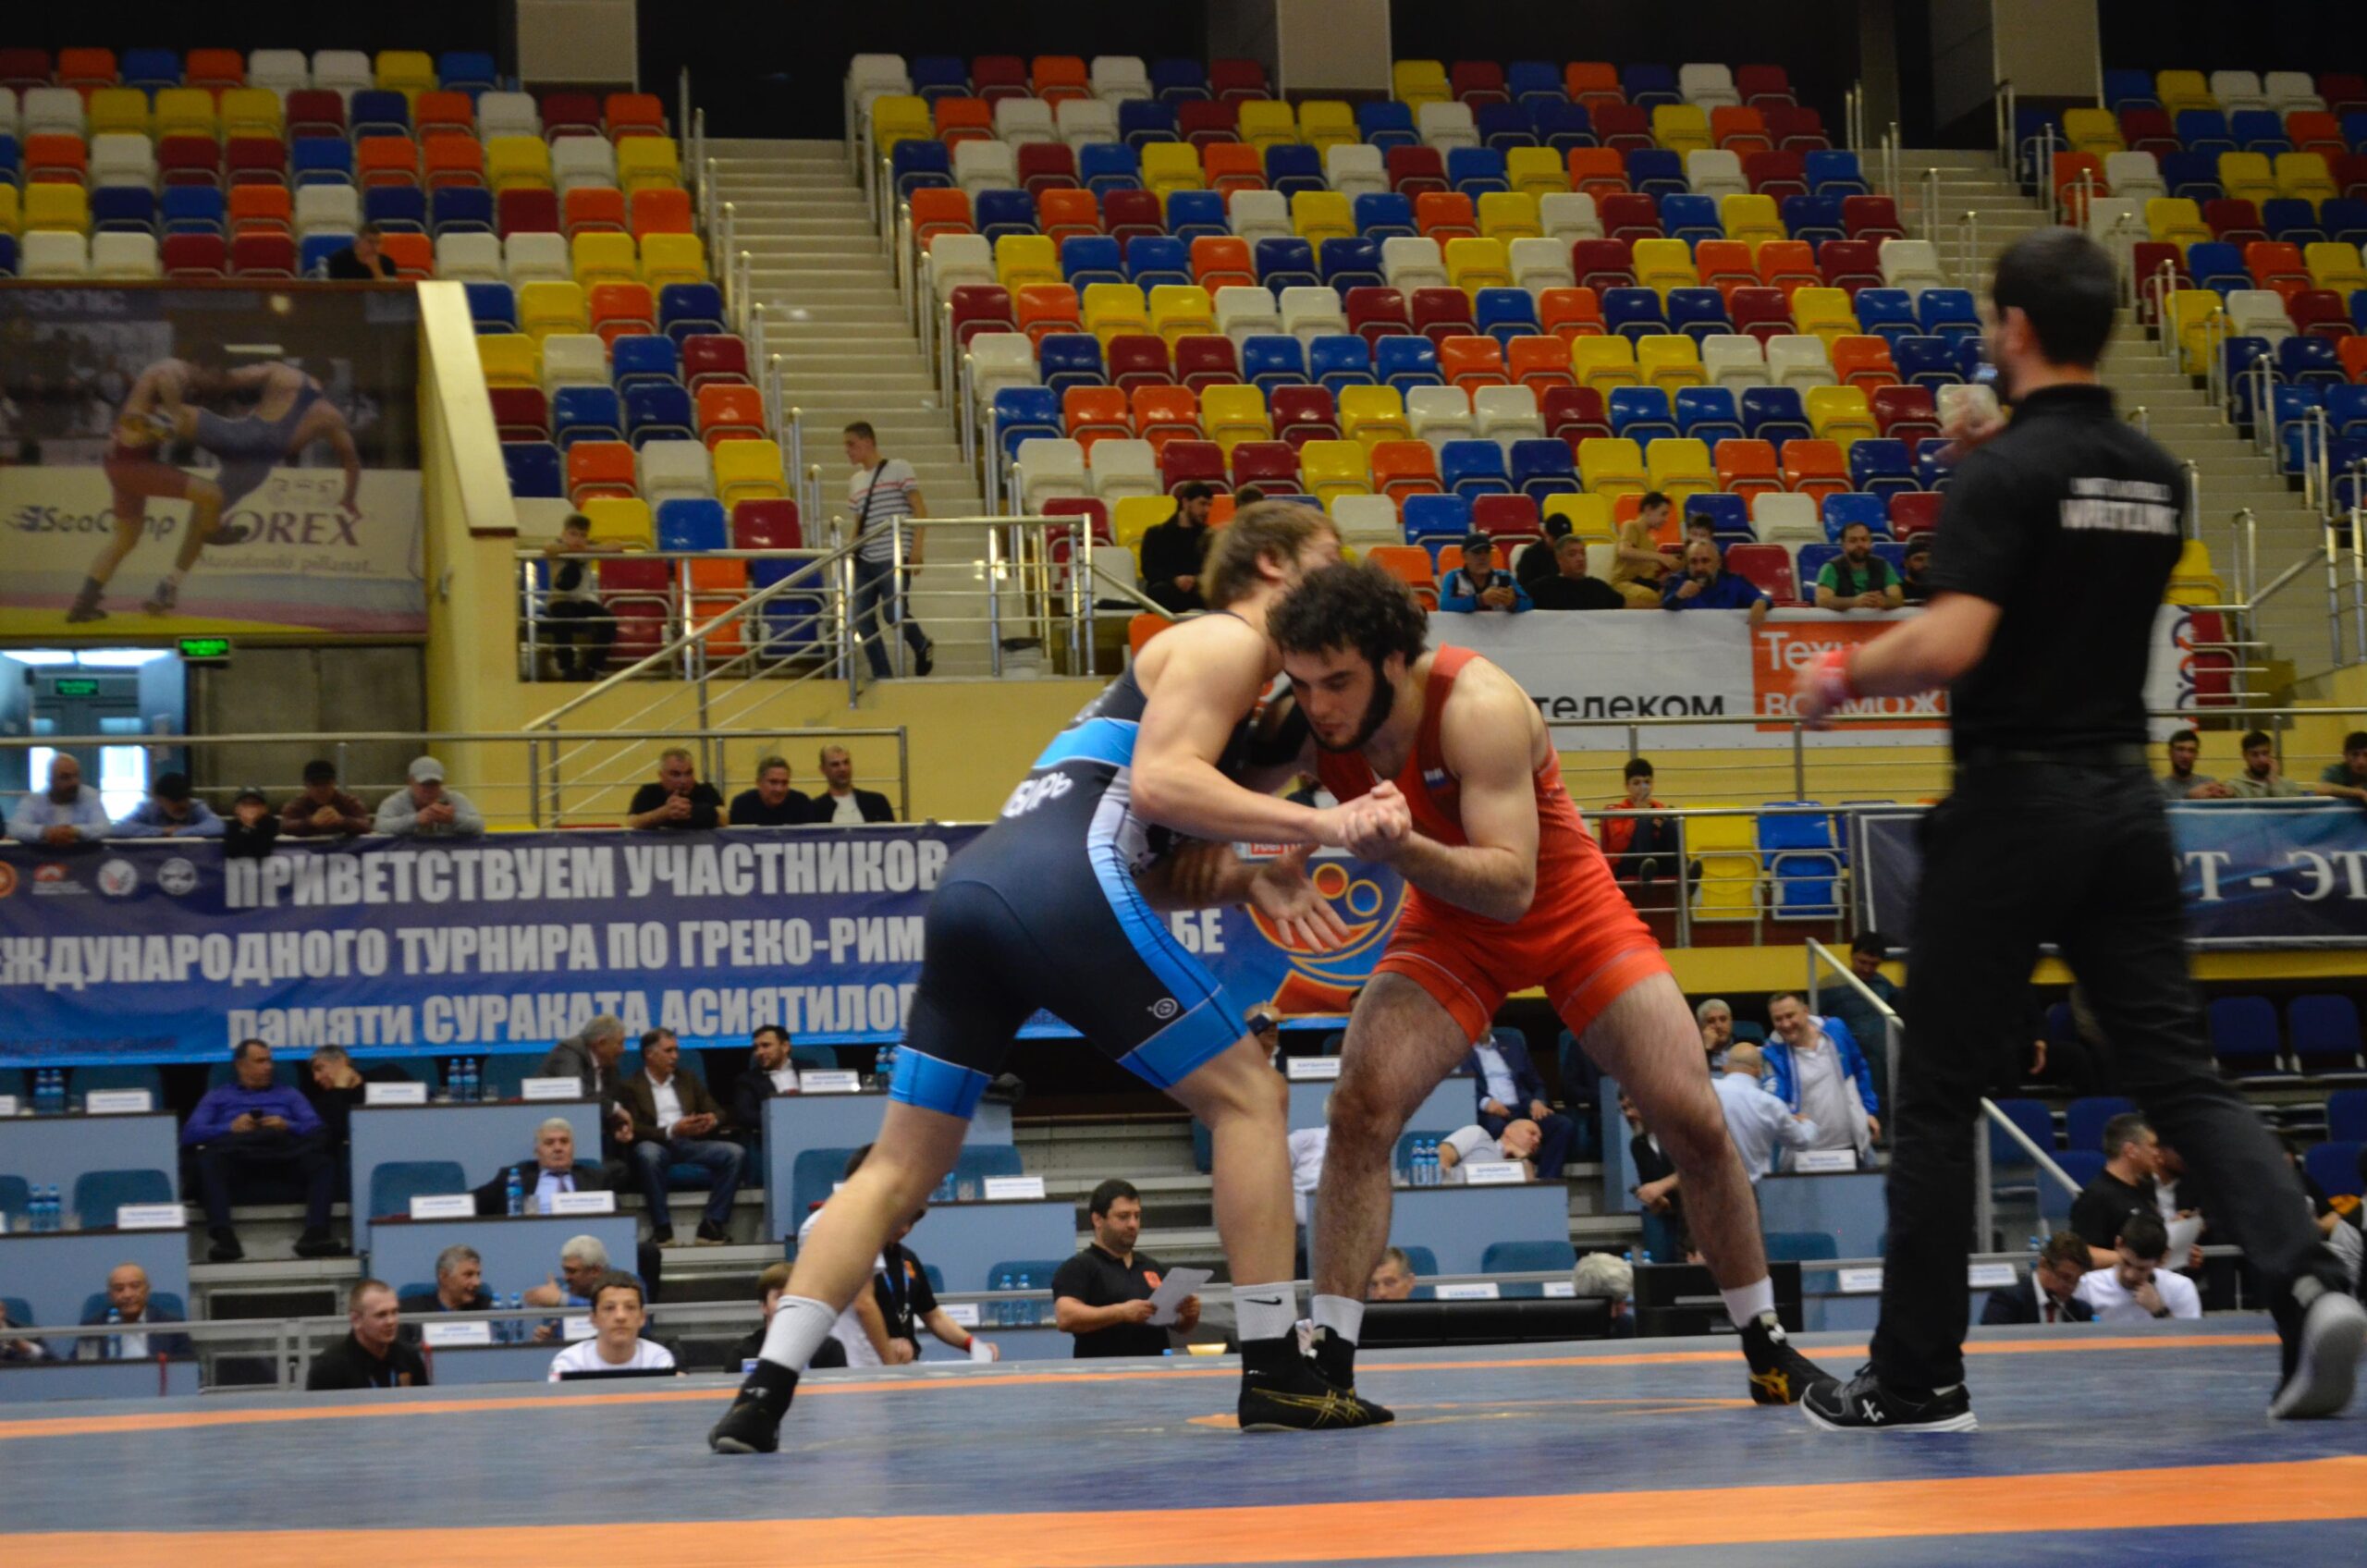 В Каспийске состоялось открытие турнира по греко-римской борьбе памяти Сураката Асиятилова